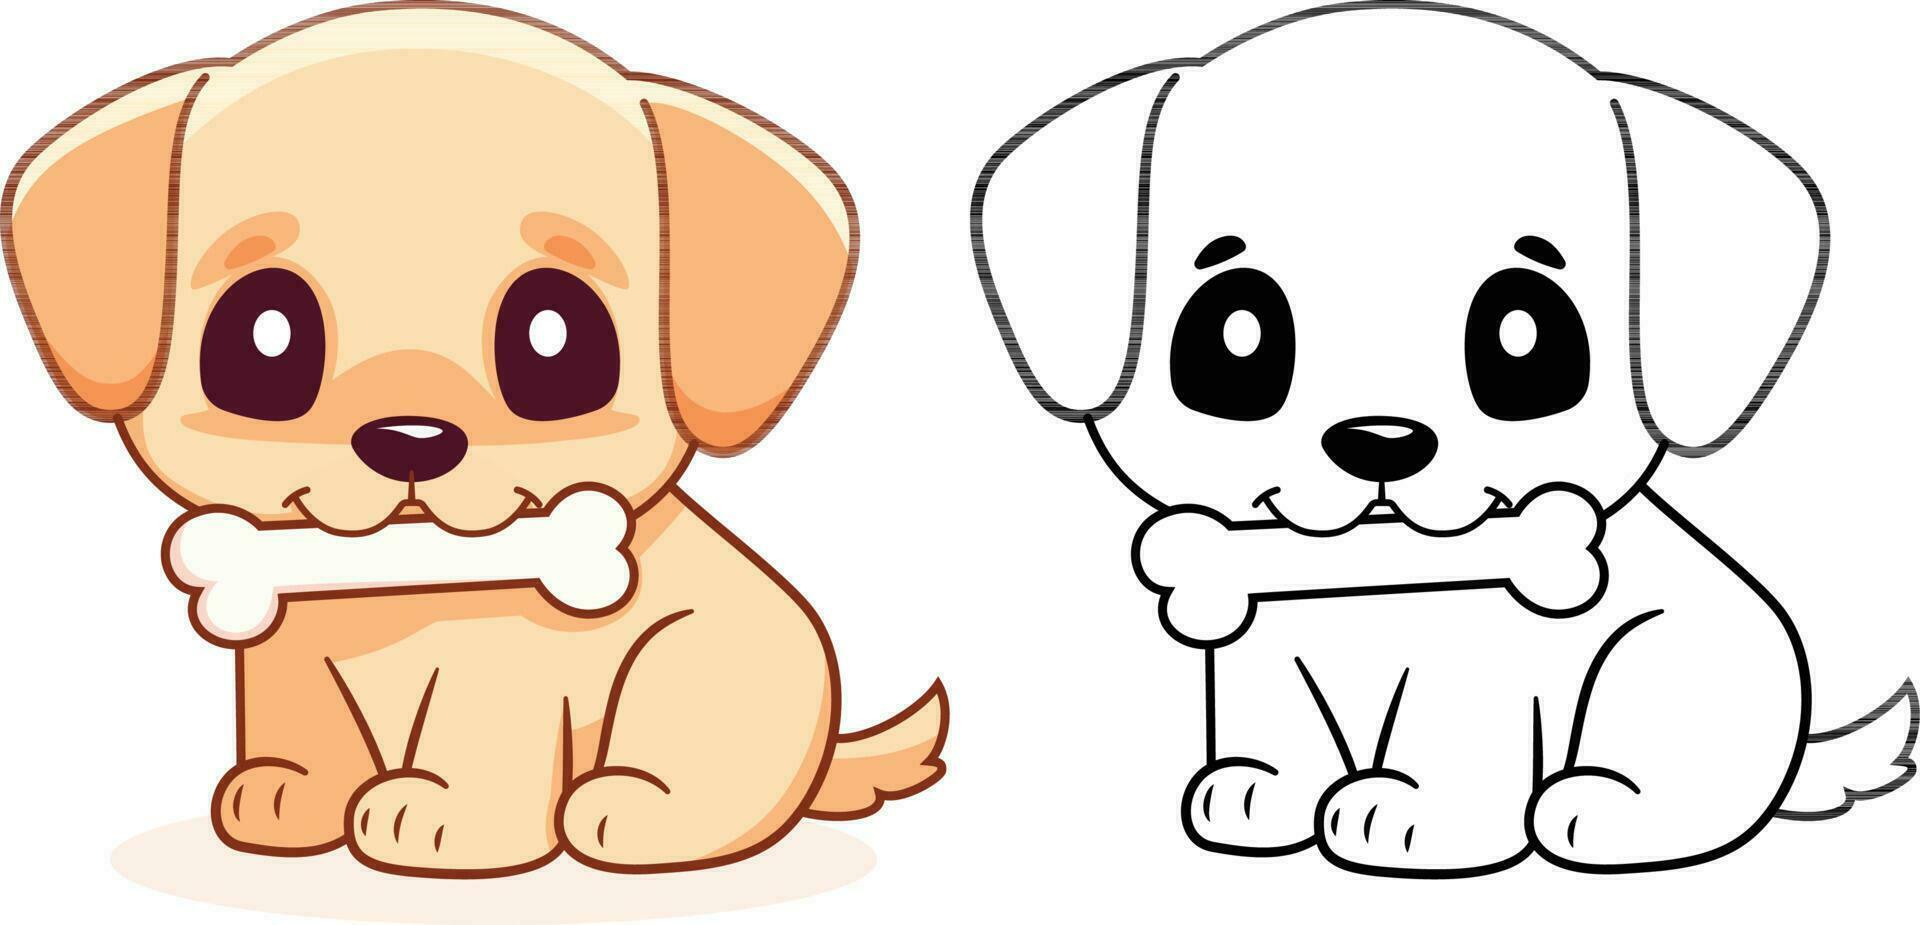 chien avec une os, vecteur illustration, une mignonne chien chiot avec une OS sur le sien bouche coloré et noir et blanc vecteur image